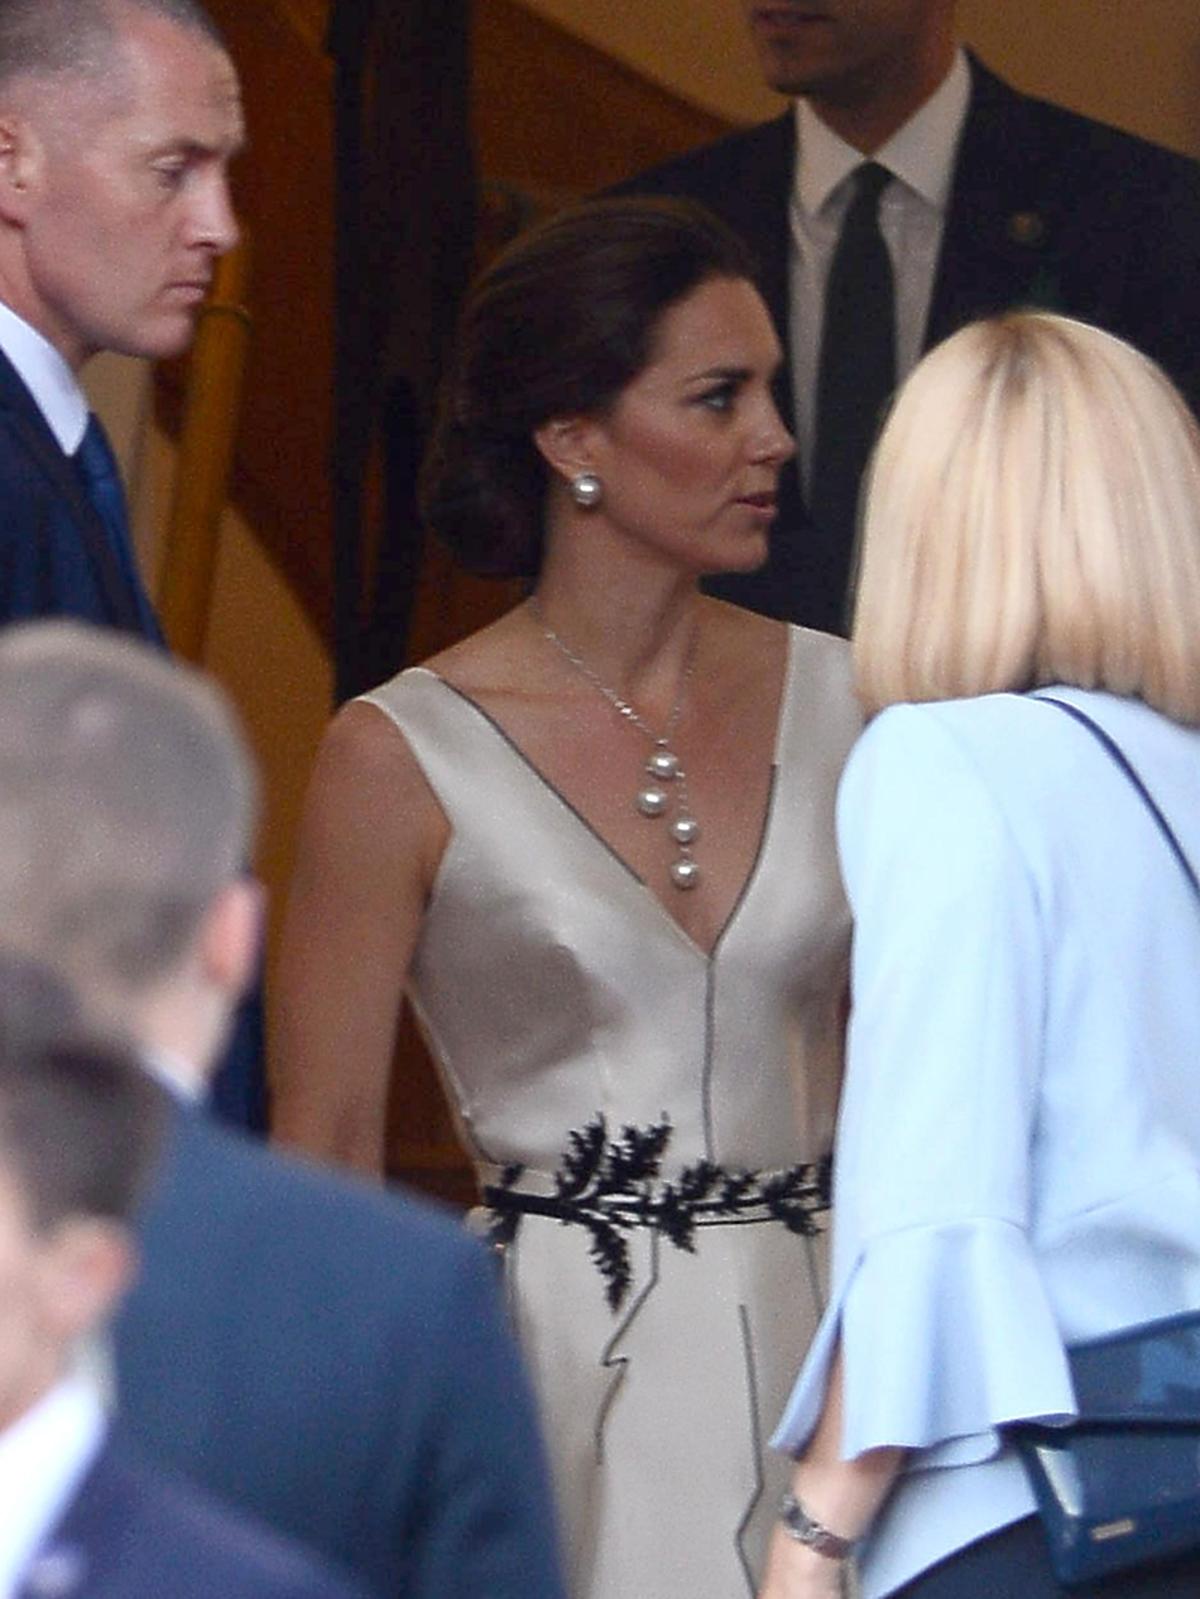 Księżna Kate zachwyciła w białej sukni na balu w Łazienkach! Ładniej od Agaty Dudy? ZDJĘCIA